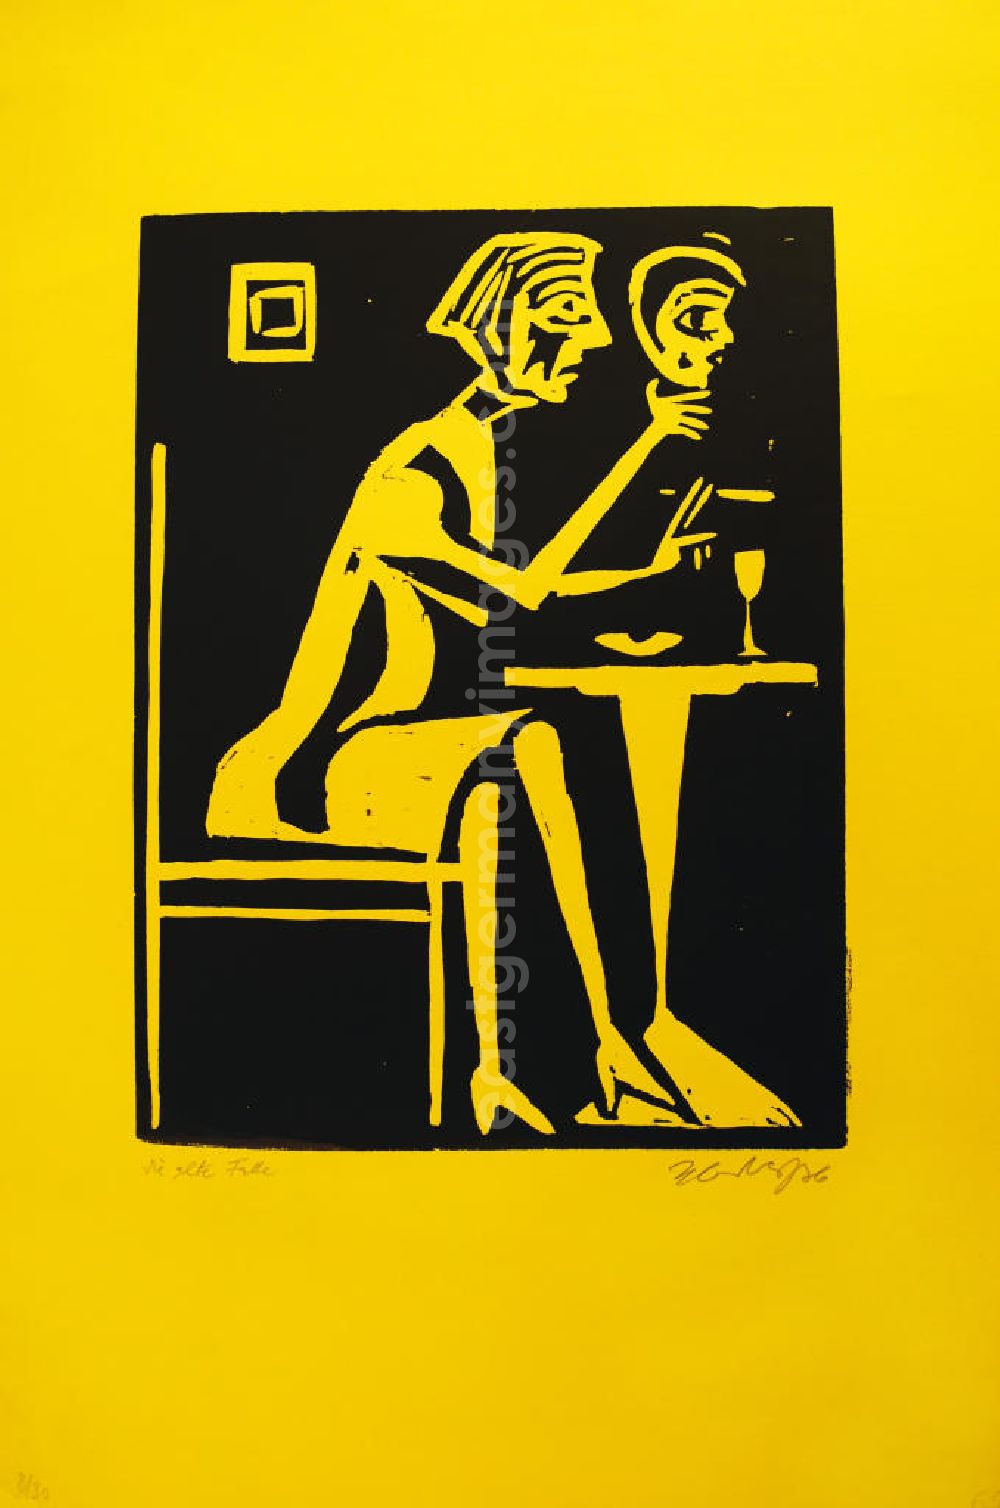 GDR image archive: Berlin - Grafik von Herbert Sandberg Die alte Falle/Die Maske aus dem Jahr 1976, 21,1x28,0cm Holzschnitt auf gelben Papier, handsigniert, 8/3